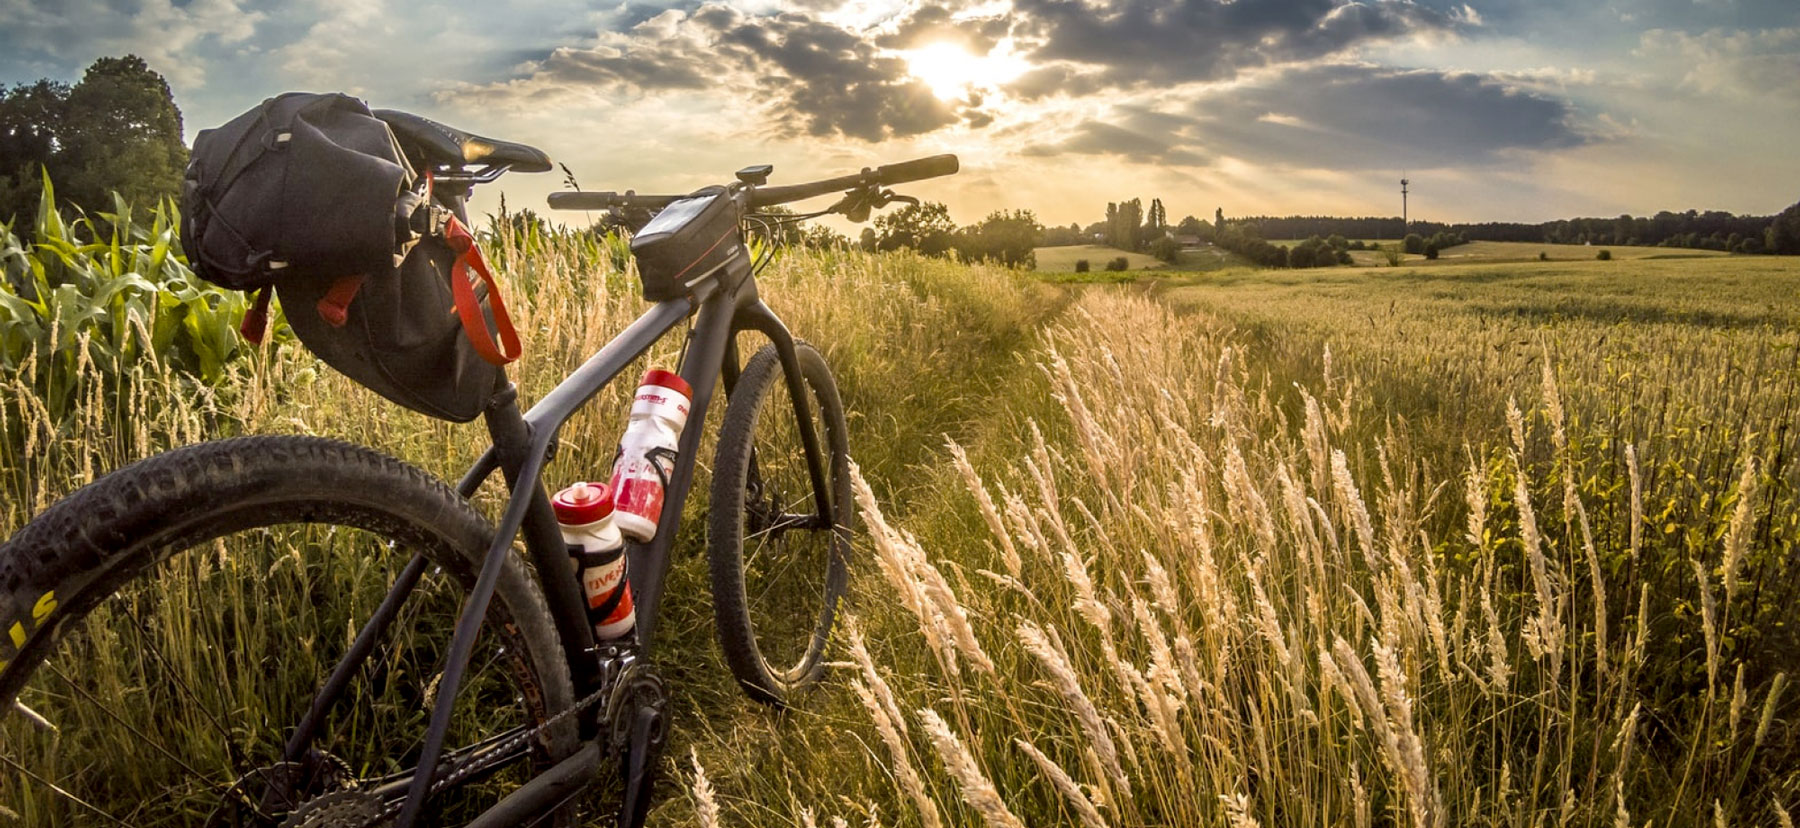 Bikepacking bike in a field